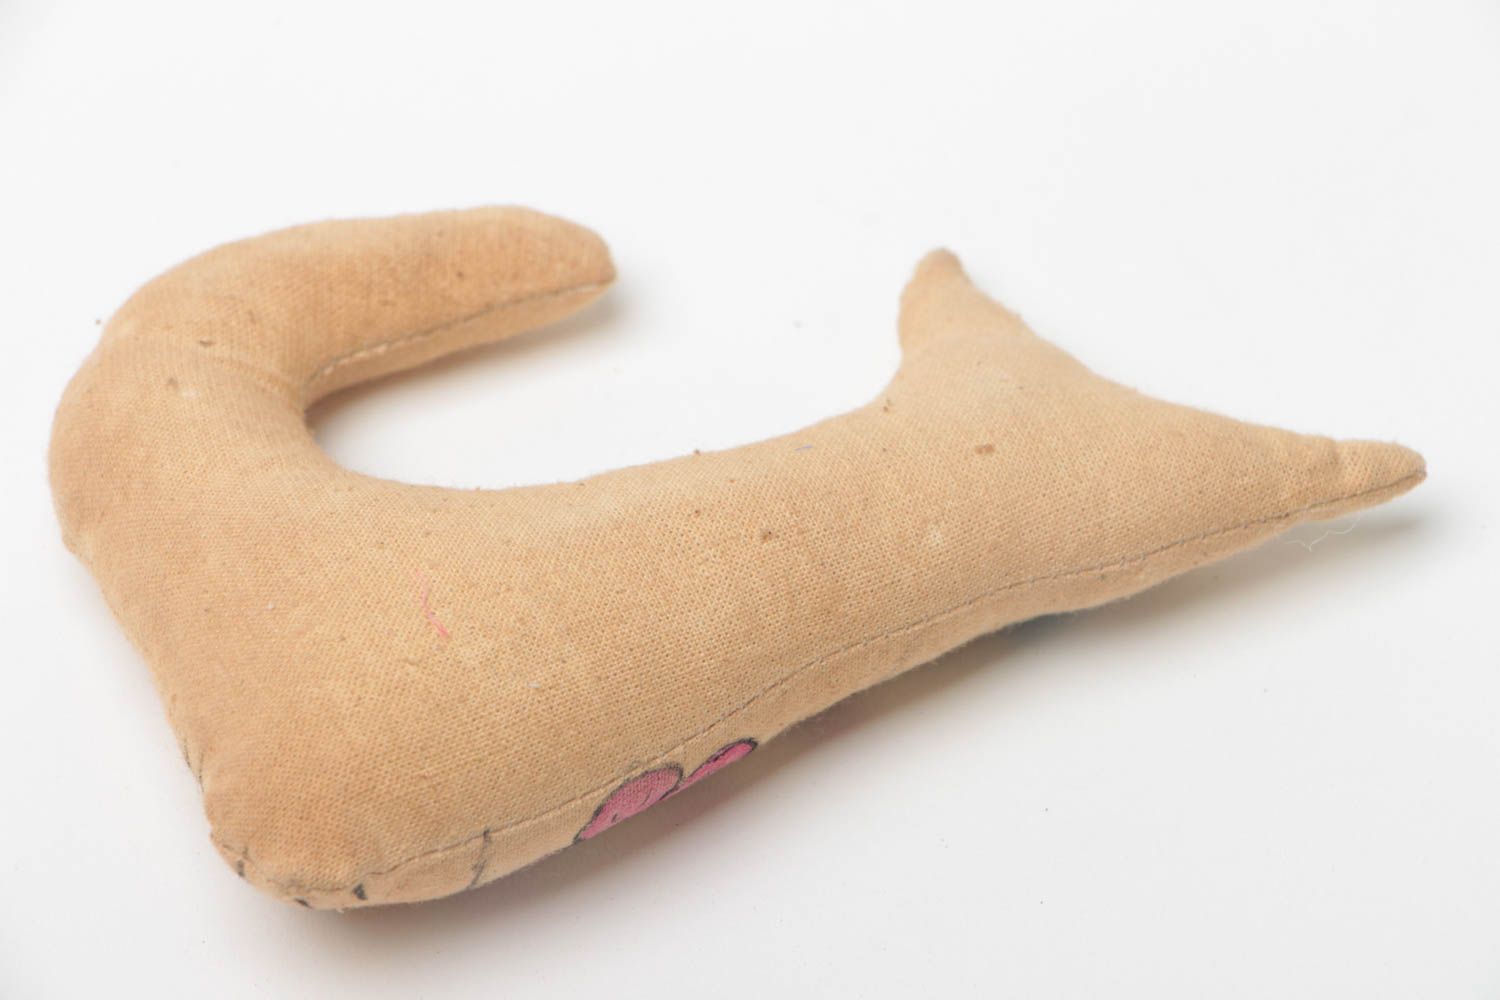 Мягкая игрушка ручной работы кошечка из бязи расписанная акриловыми красками фото 4